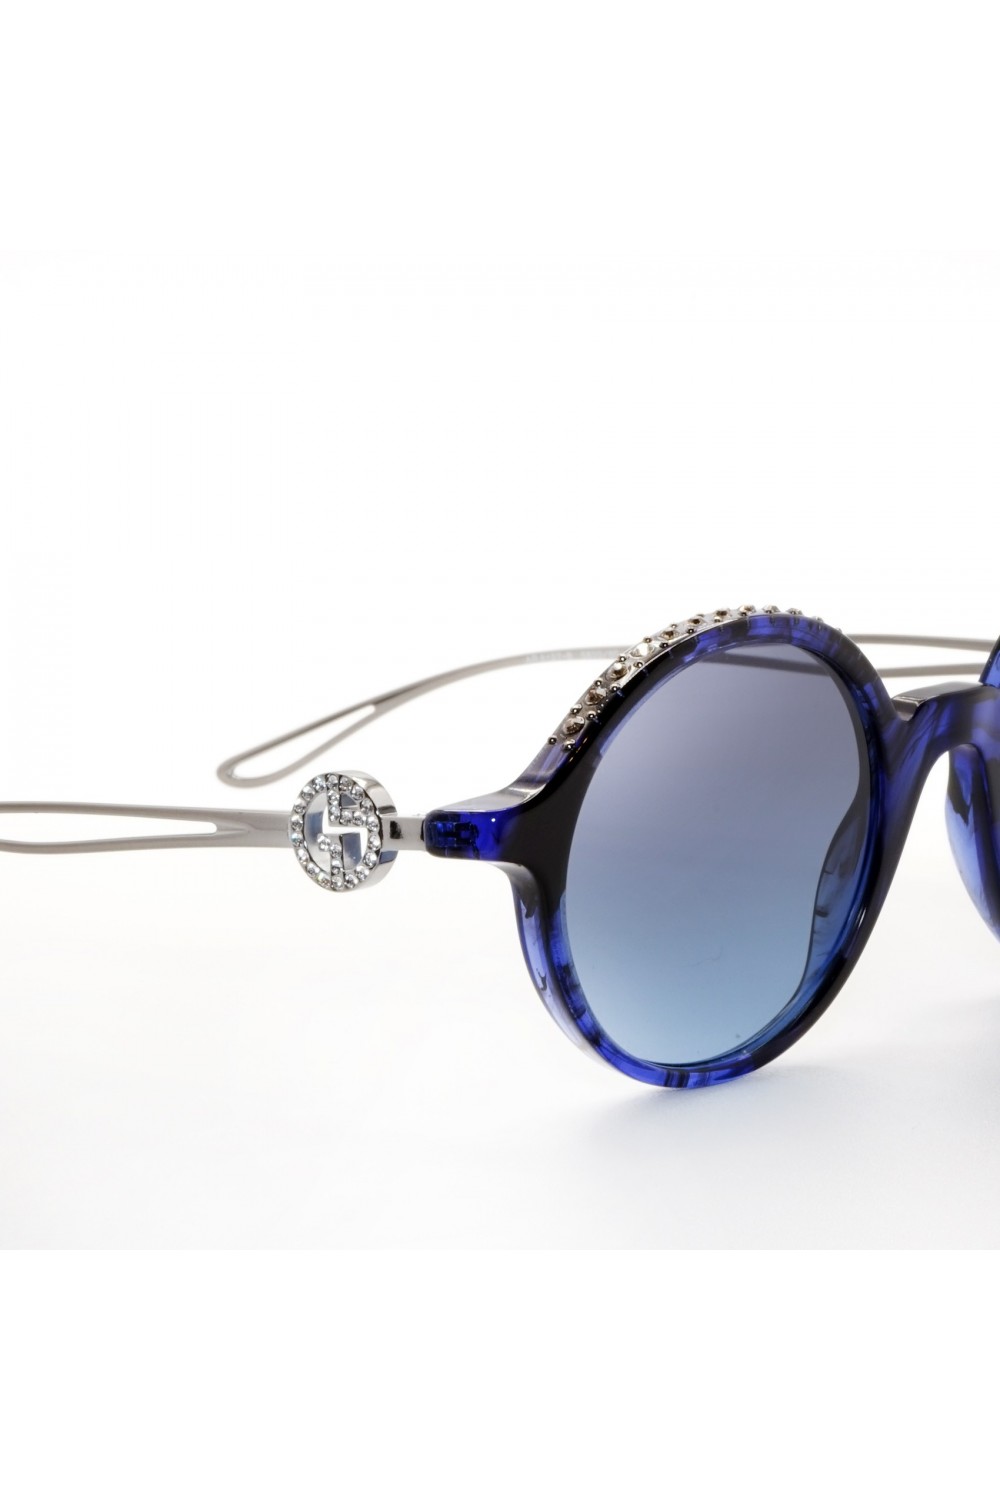 Custodia occhiali in pelle navy / Slip occhiali da sole in pelle fatti a  mano / Borsa occhiali blu / Collezione Missouri -  Italia